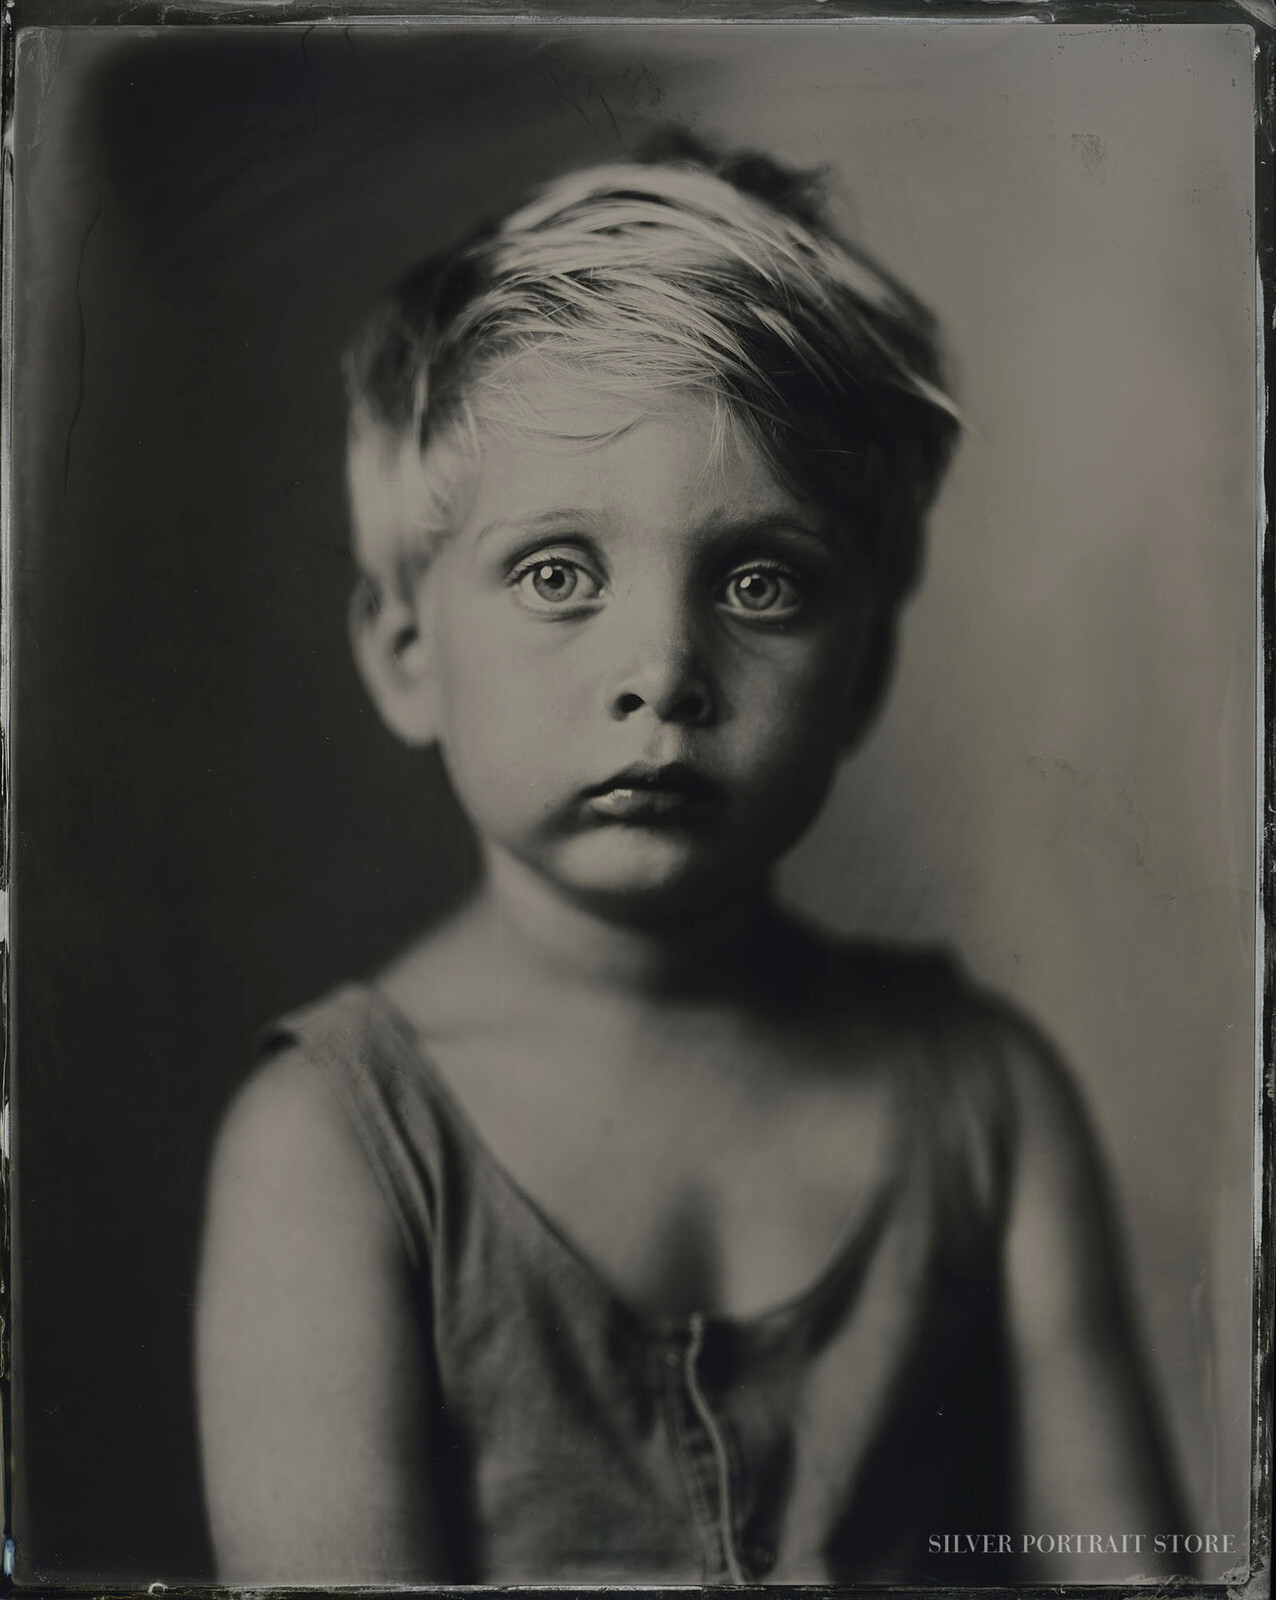 Boris-Silver Portrait Store-Wet plate collodion-Tintype 20 x 25 cm.